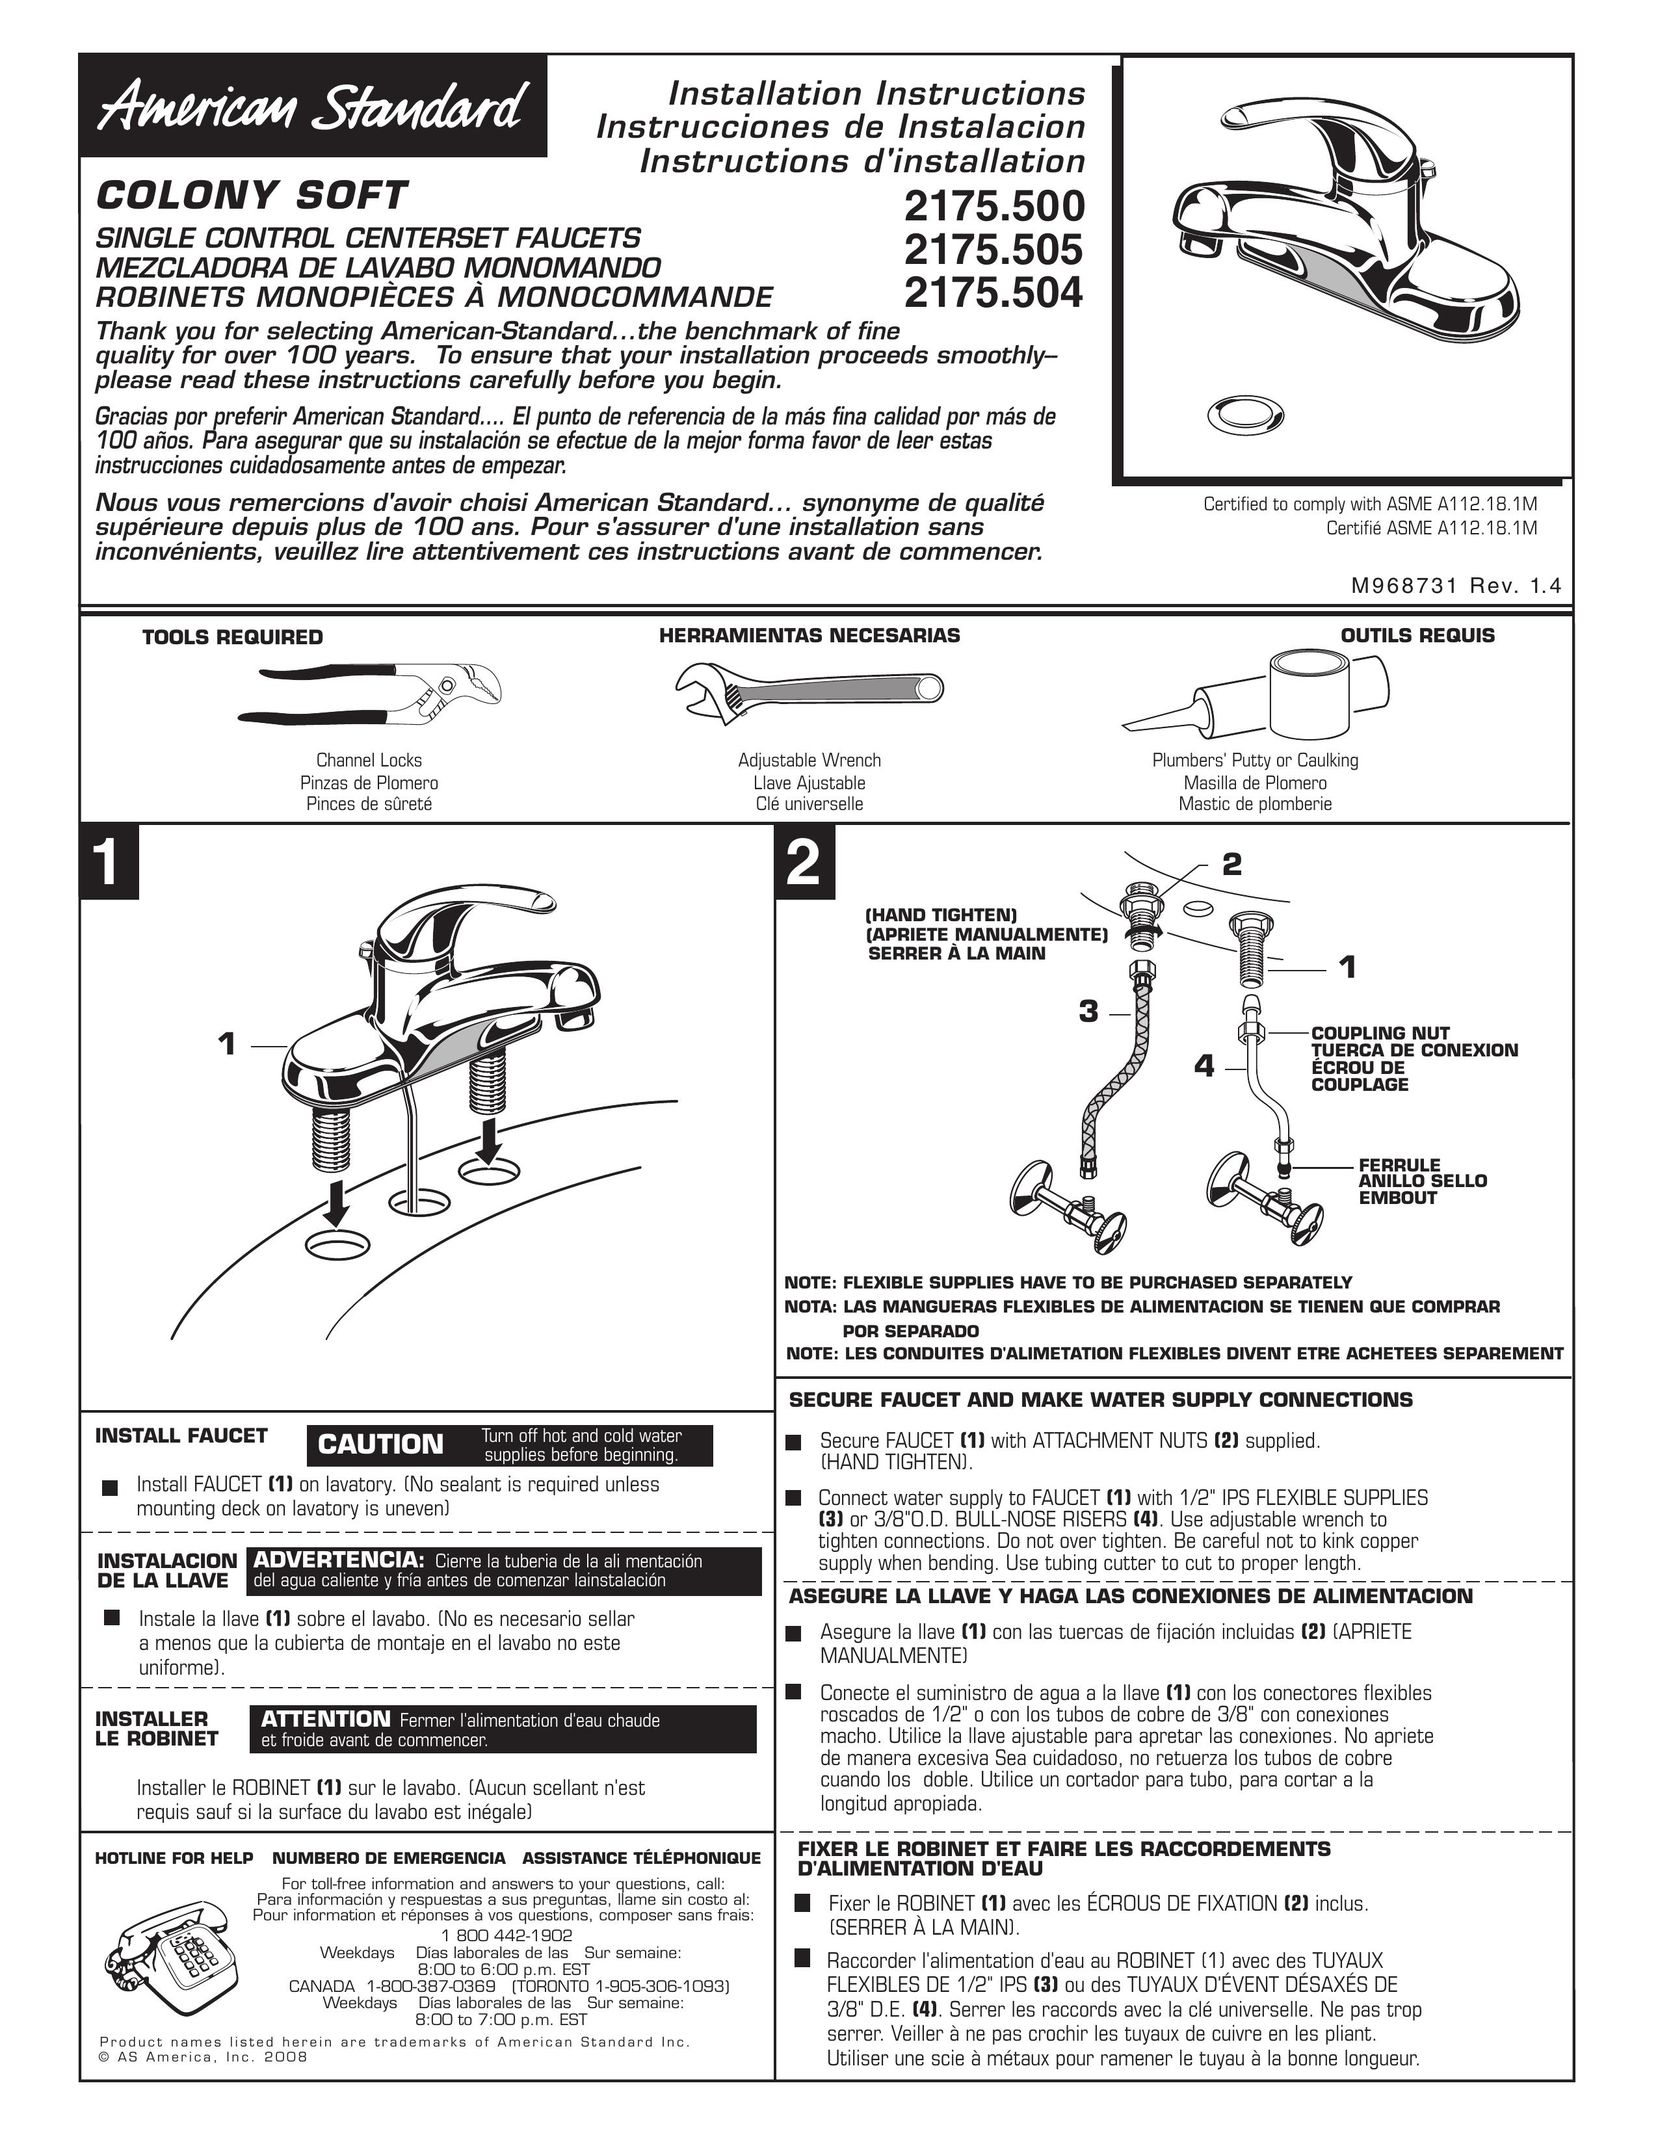 American Standard 2175.5 Plumbing Product User Manual